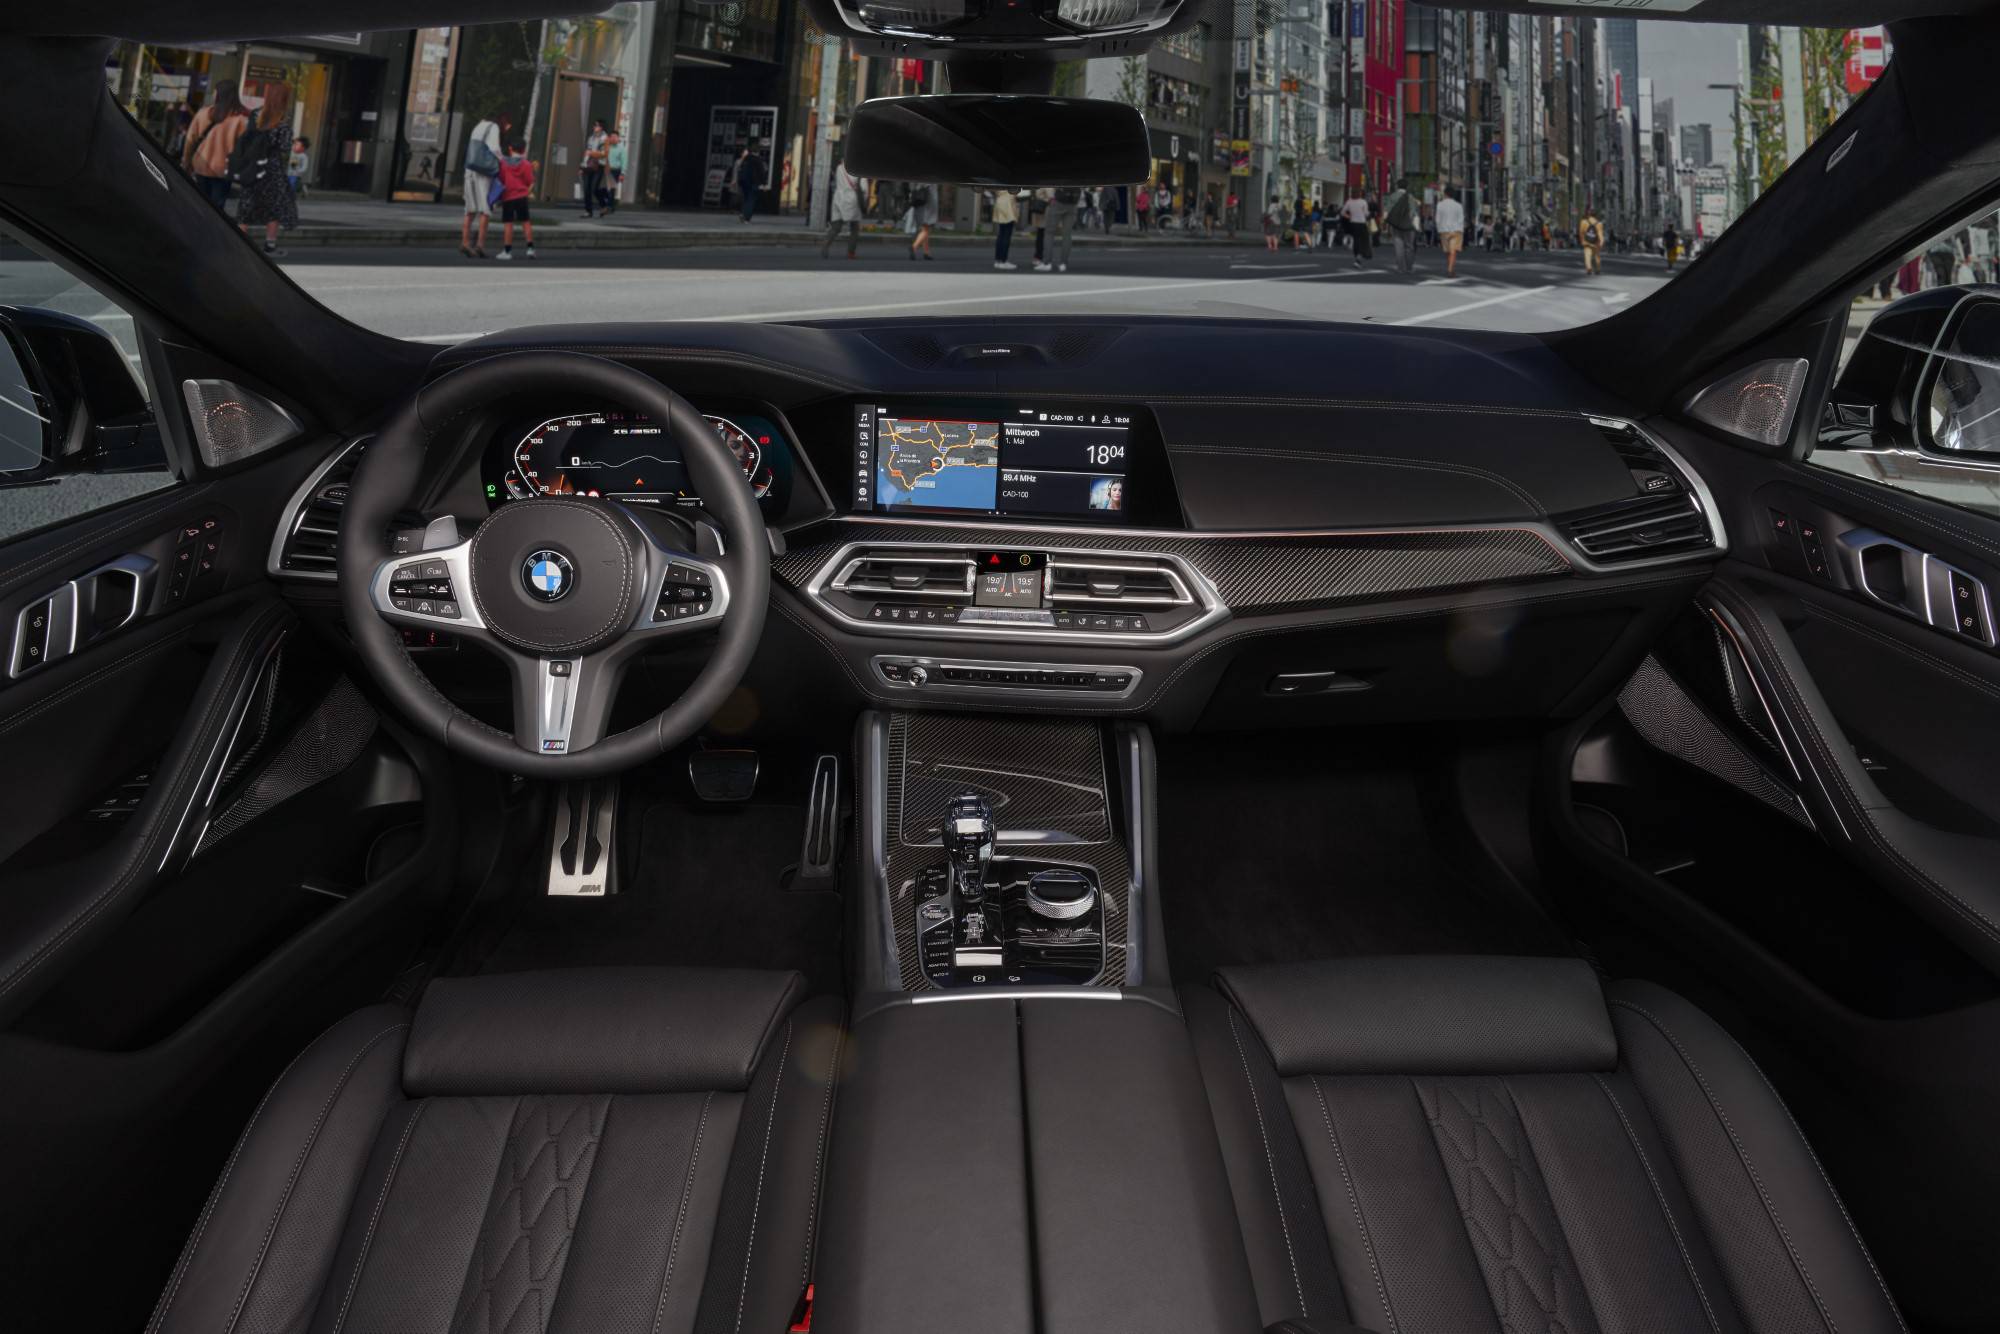 Complicado Movilizar vapor El interior del Nuevo BMW X6 - BMW Blog